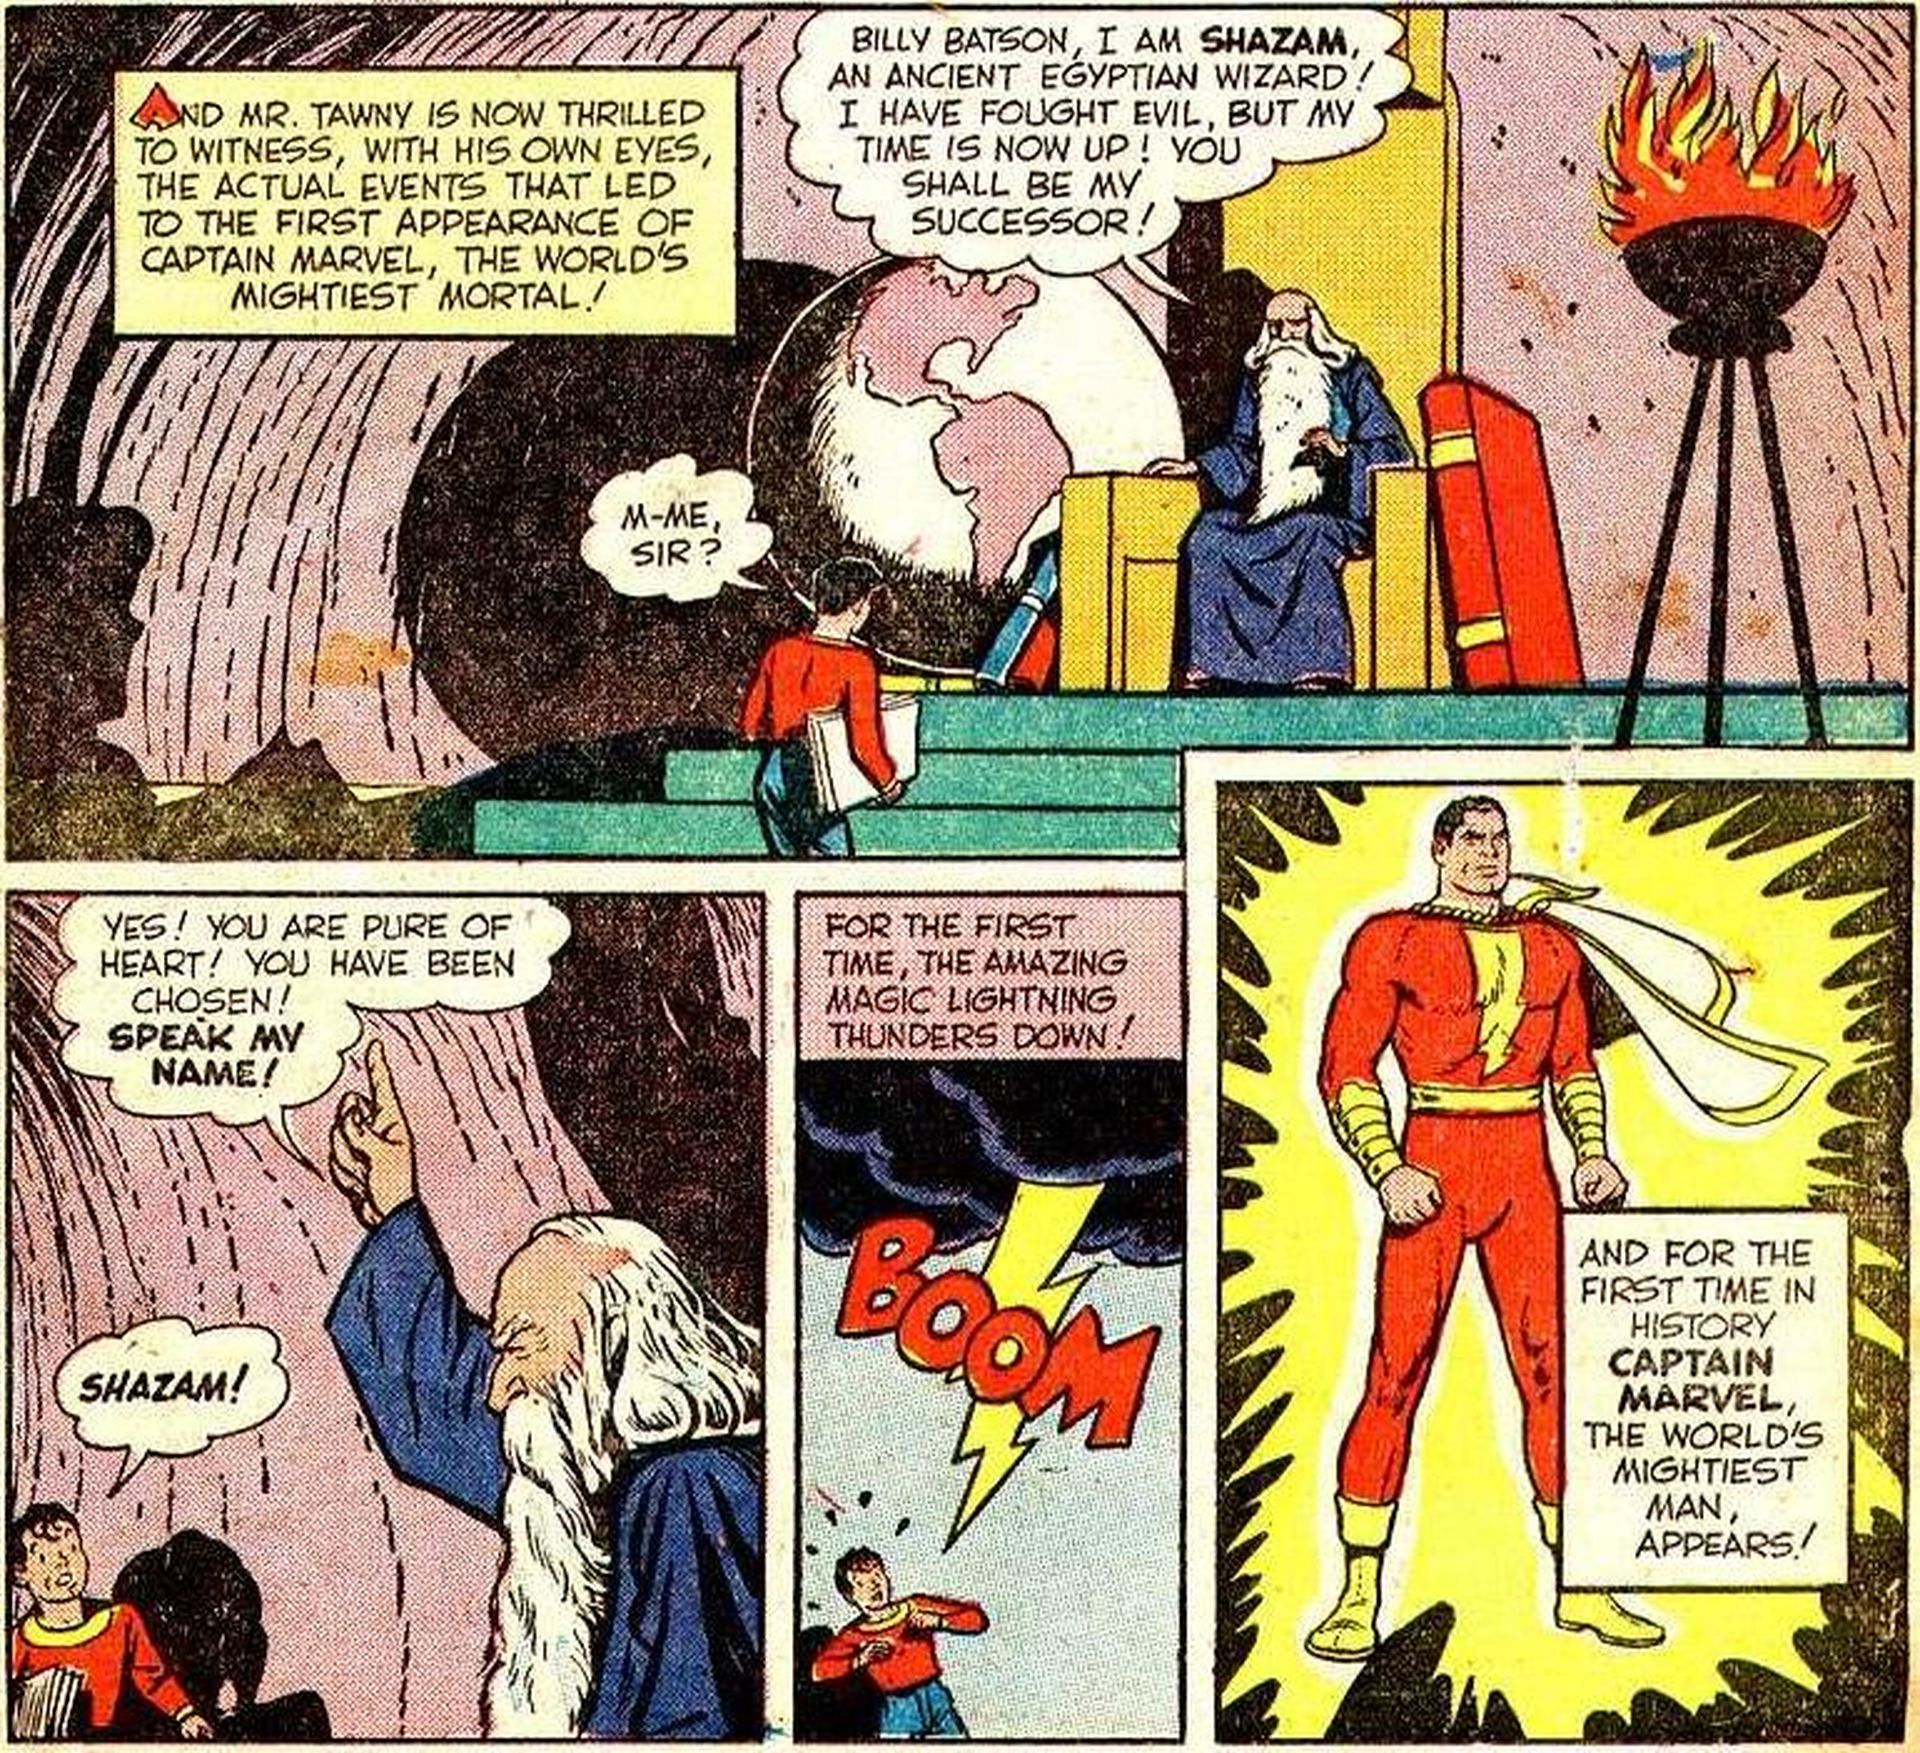 Shazam (Capitán Marvel) en los años 40